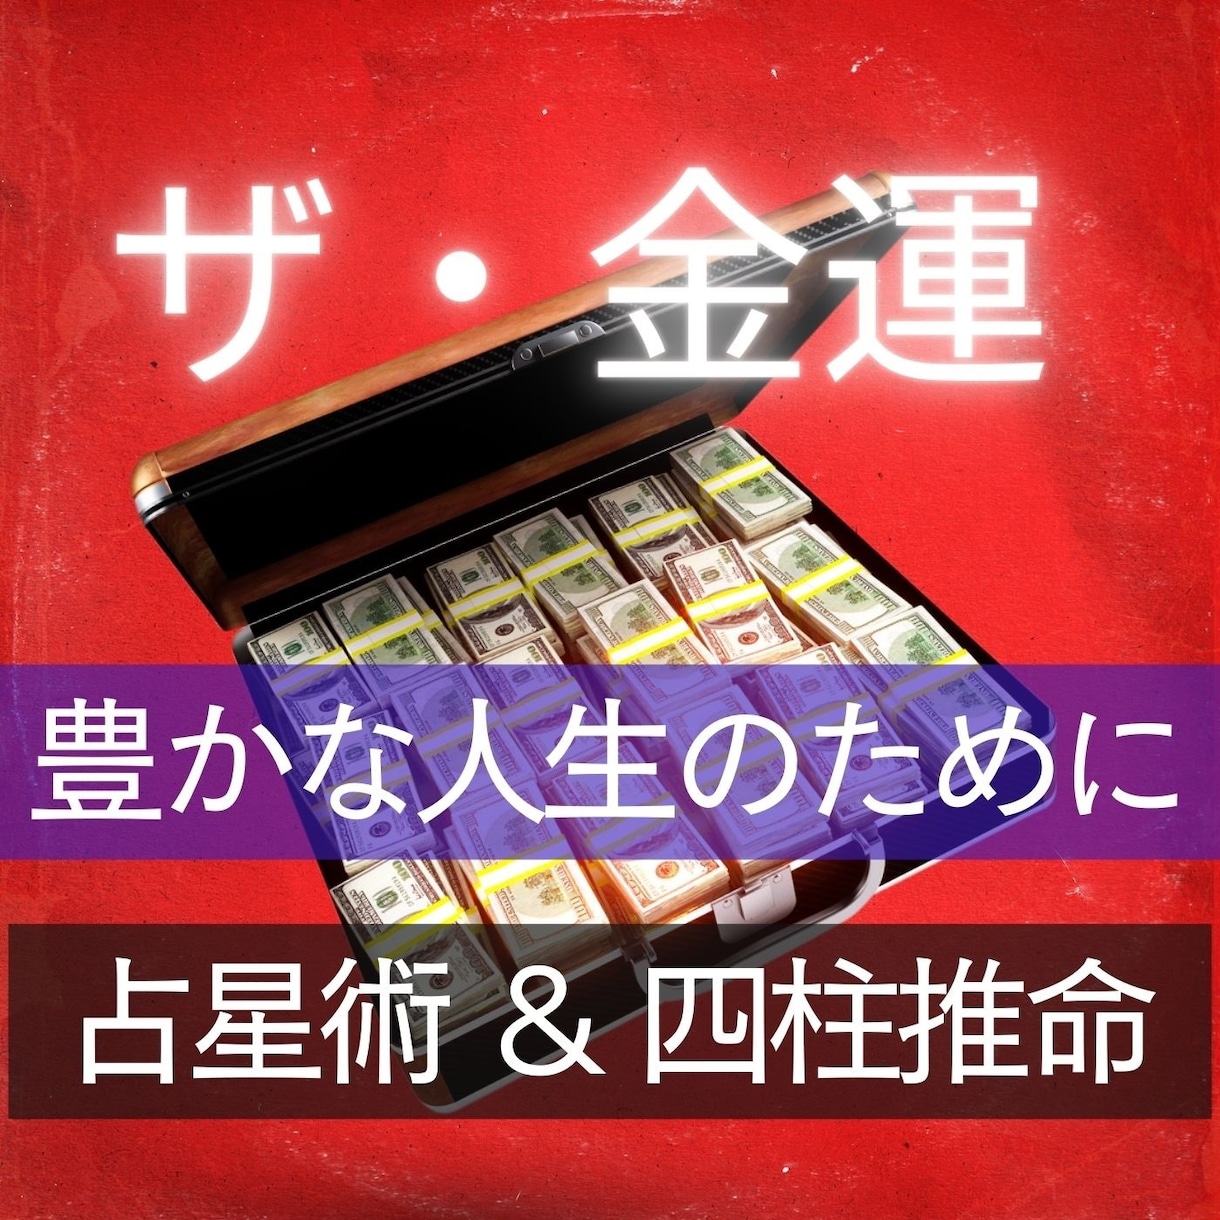 テレホンカード アイドル テレカ 永井流奈 プレイボーイ カードショップトレジャー - プリペイドカード